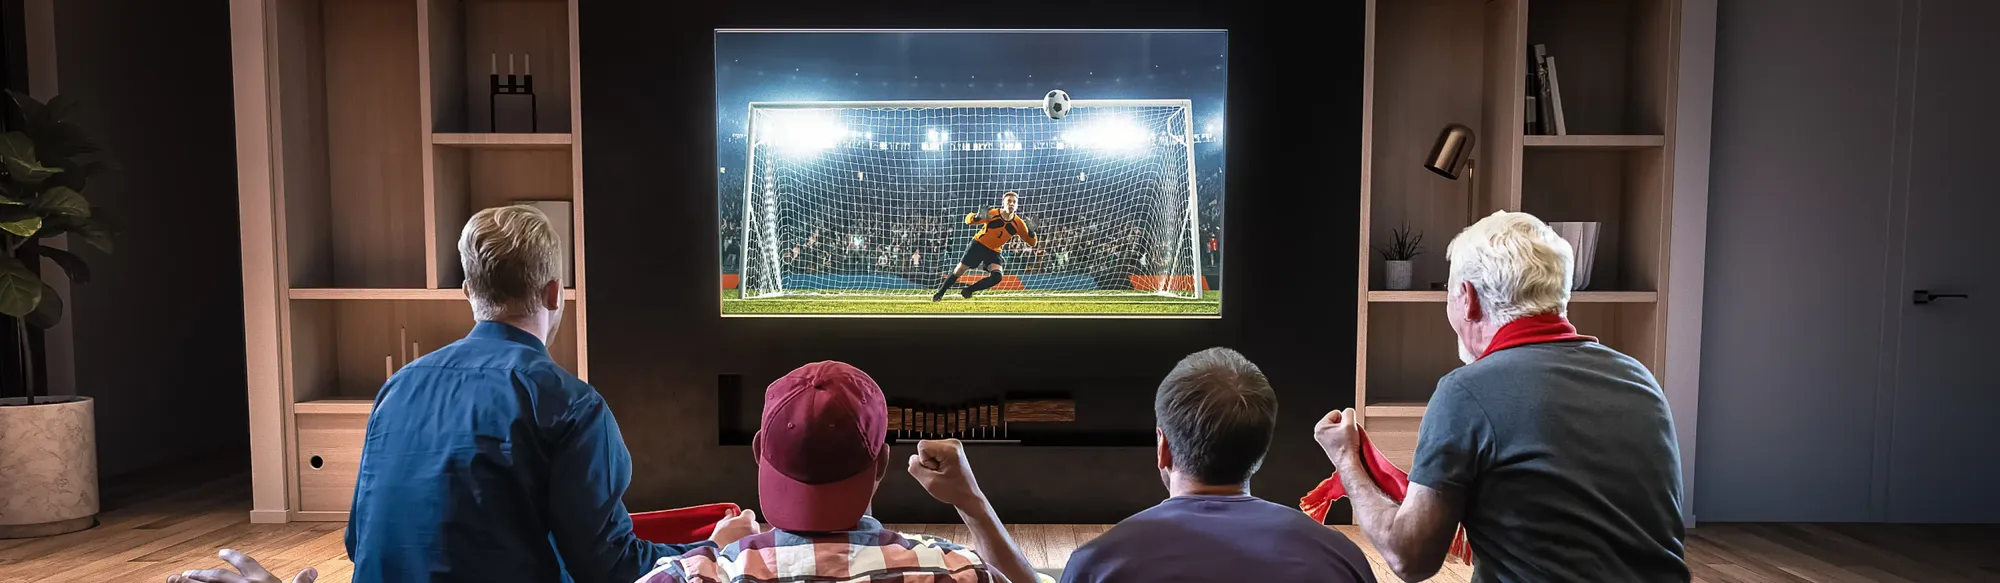 Ativar ou não a função futebol da TV para assistir aos jogos?